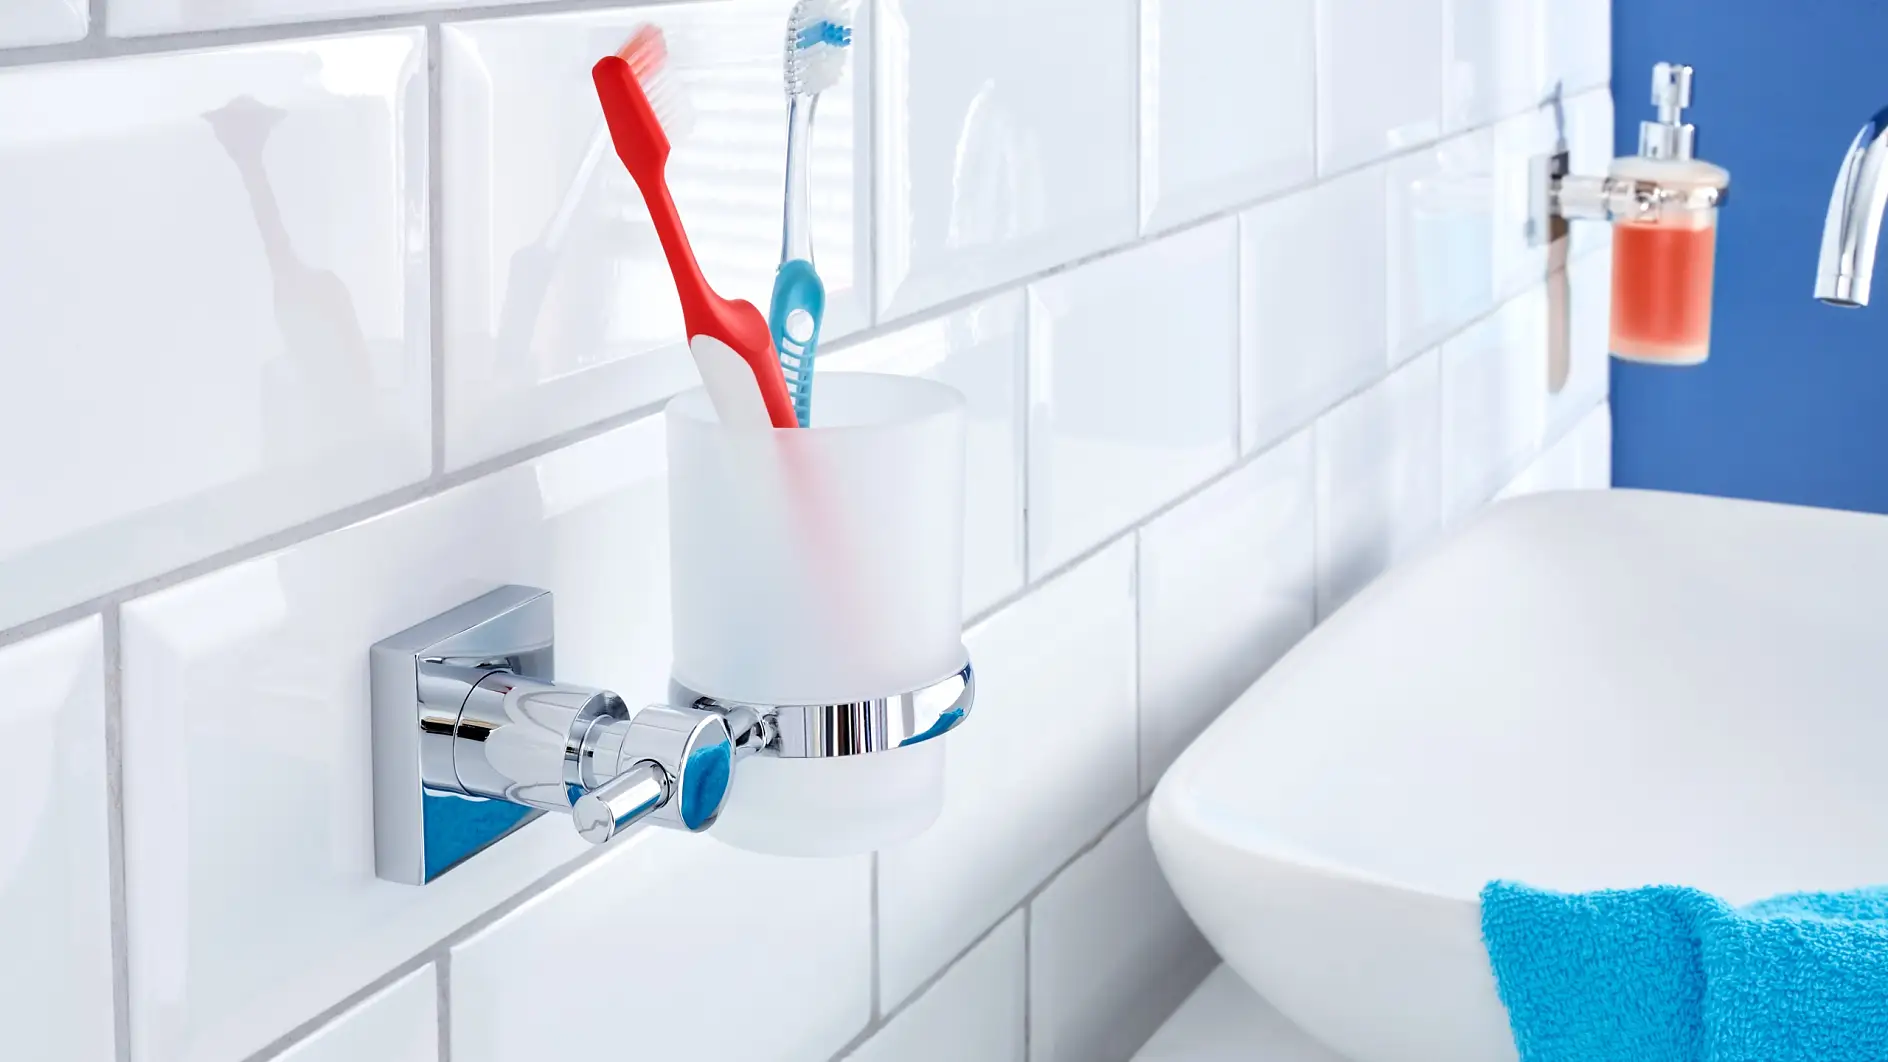 Lad ikke dit tandkrus optage plads på vasken. Opbevar det, hvor det ser bedst ud og hører til.